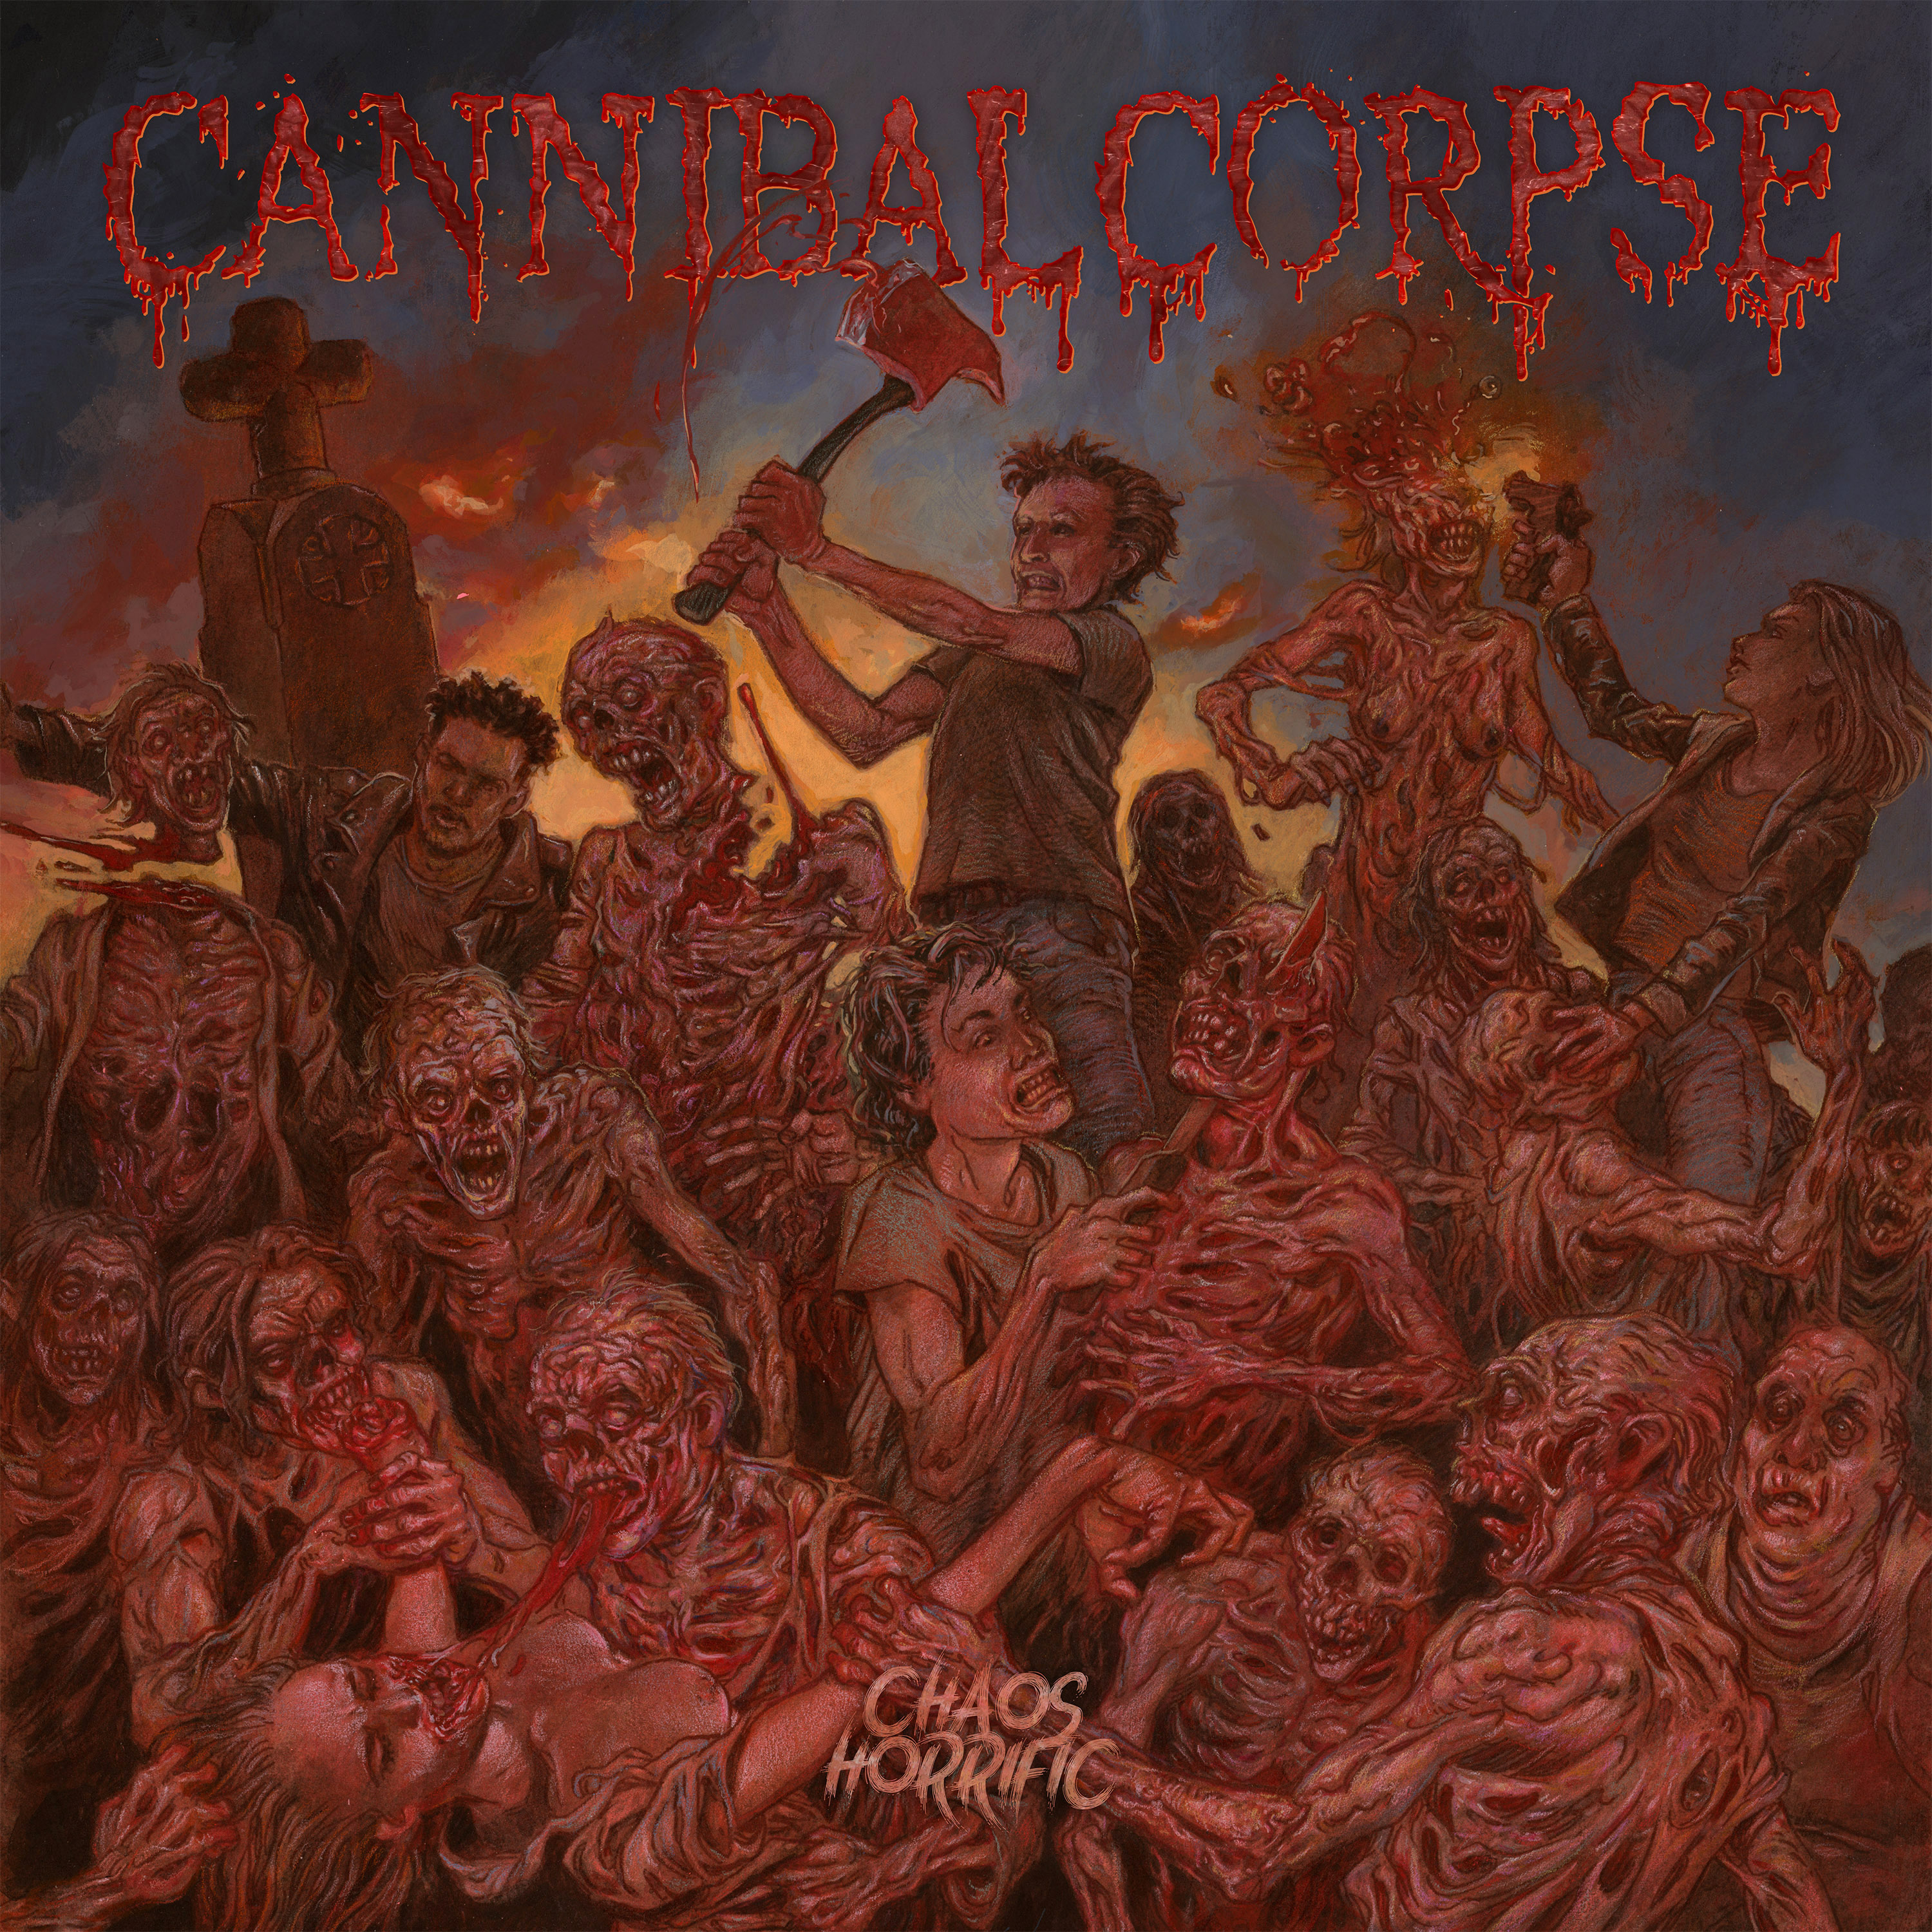 Cannibal Corpse – Chaos Horrific Album Review